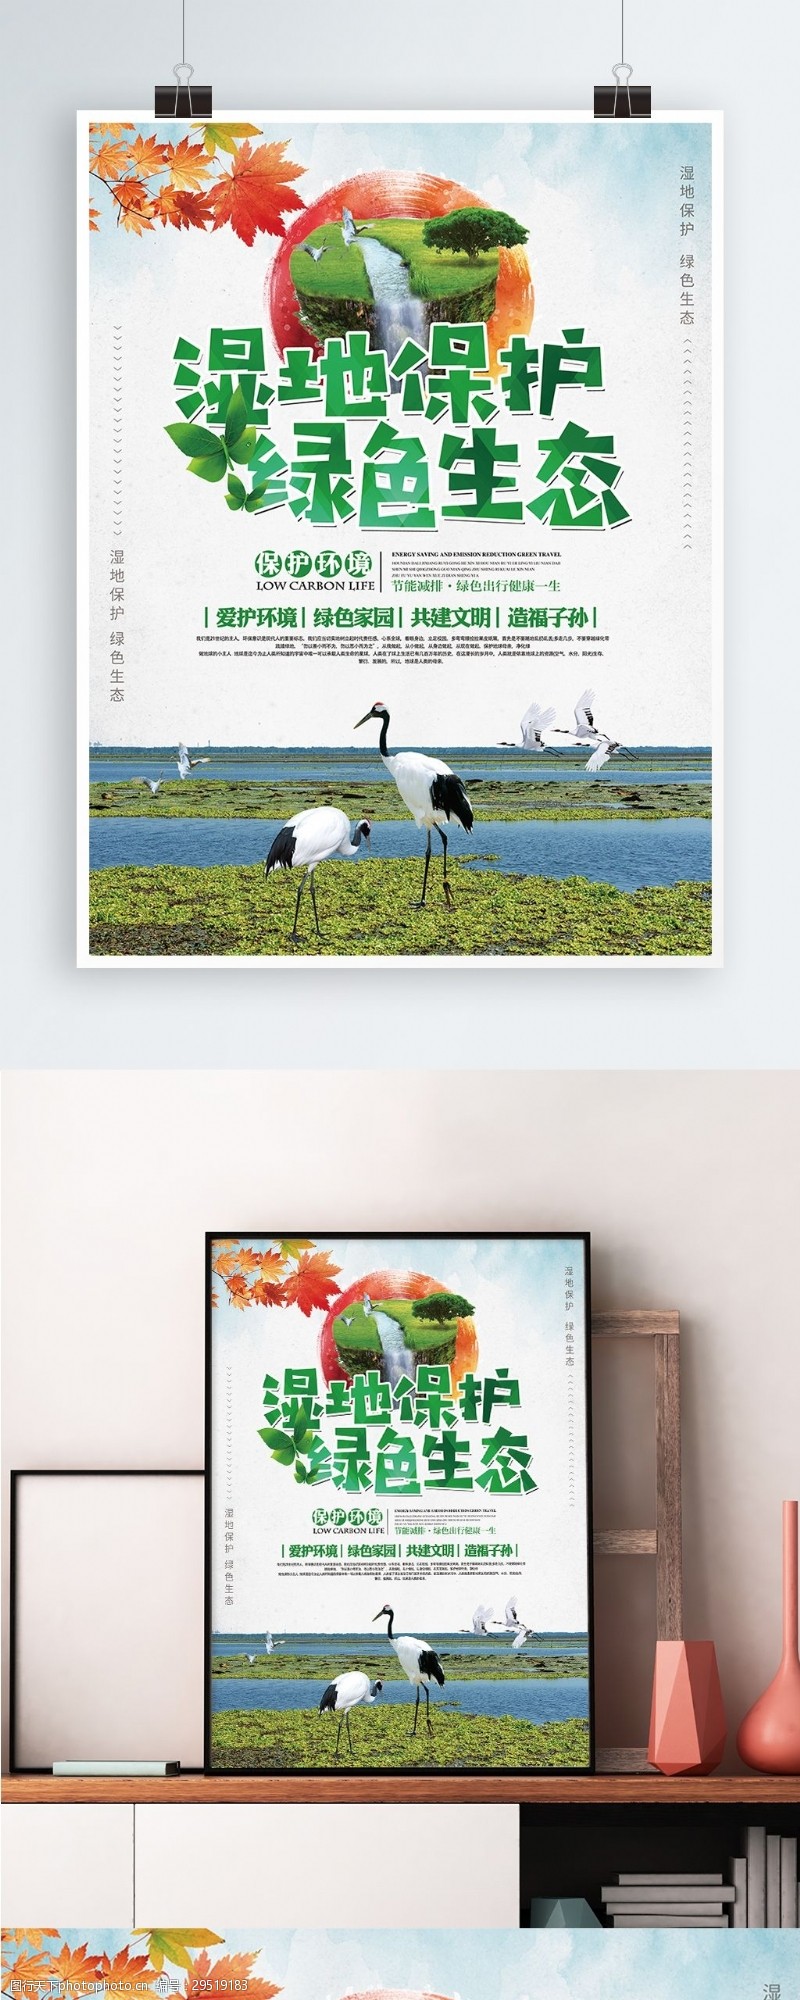 湿地保护绿色生态世界湿地日公益宣传海报